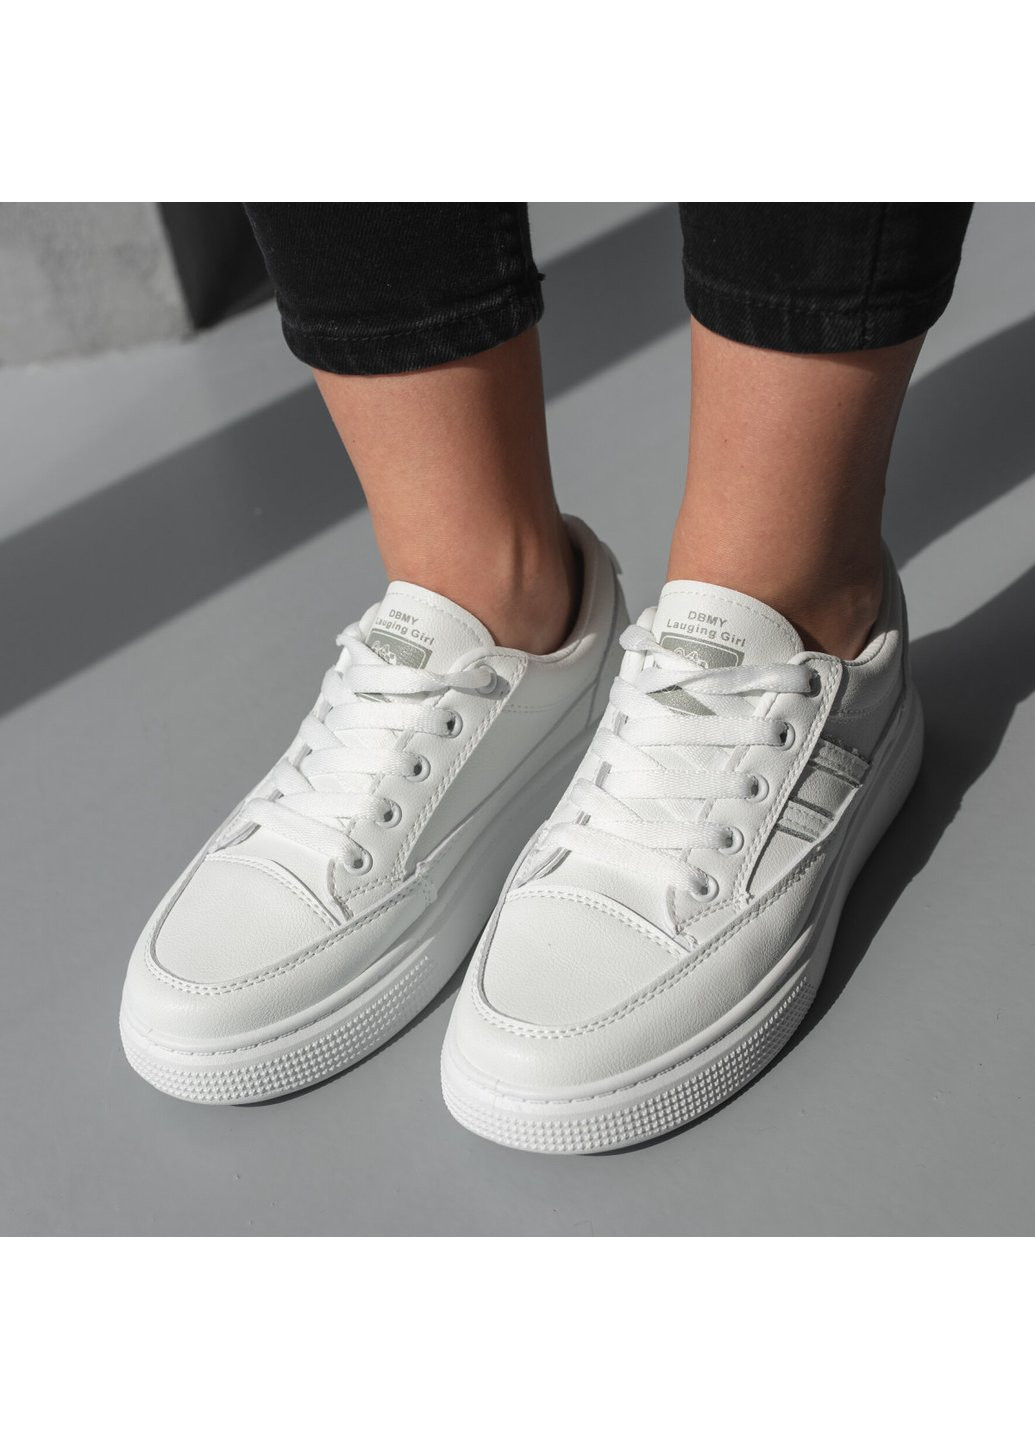 Белые демисезонные кроссовки женские gracie 3740 36 23 см белый Fashion